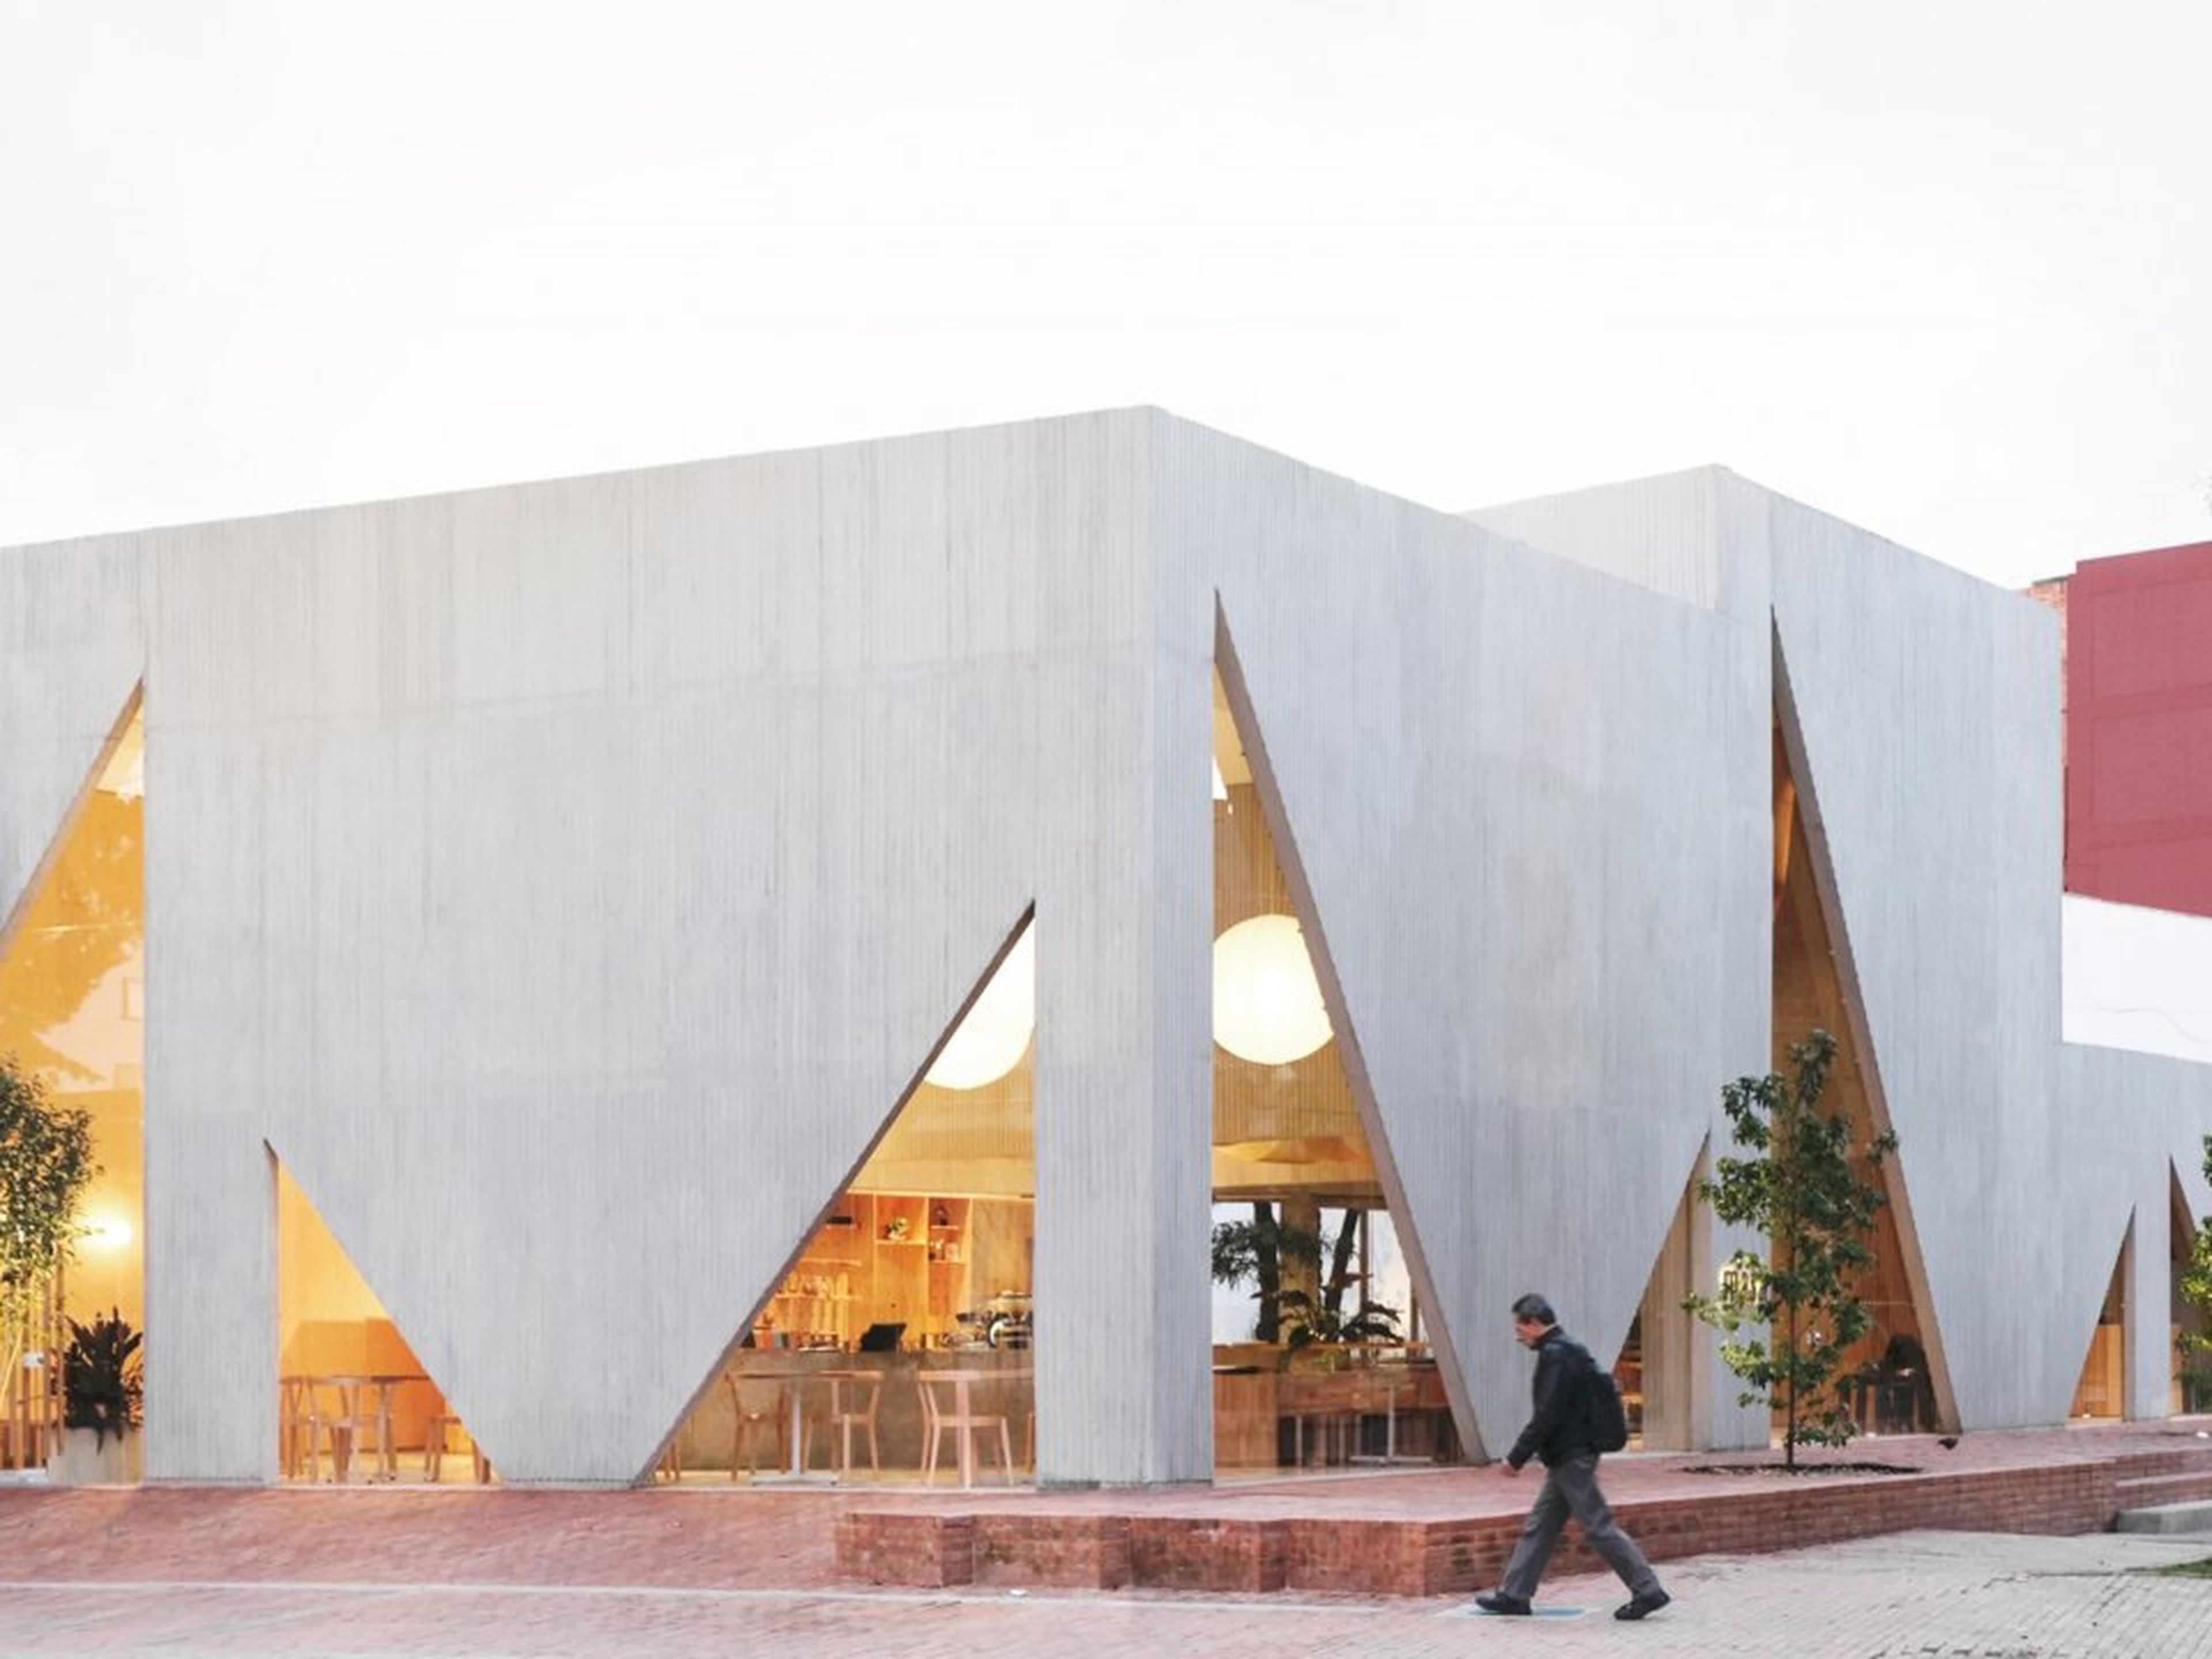 Otro restaurante construido con maestría es la Panadería y Cafetería Masa en Bogotá, Colombia, que se compone de ventanas de hormigón triangulares.